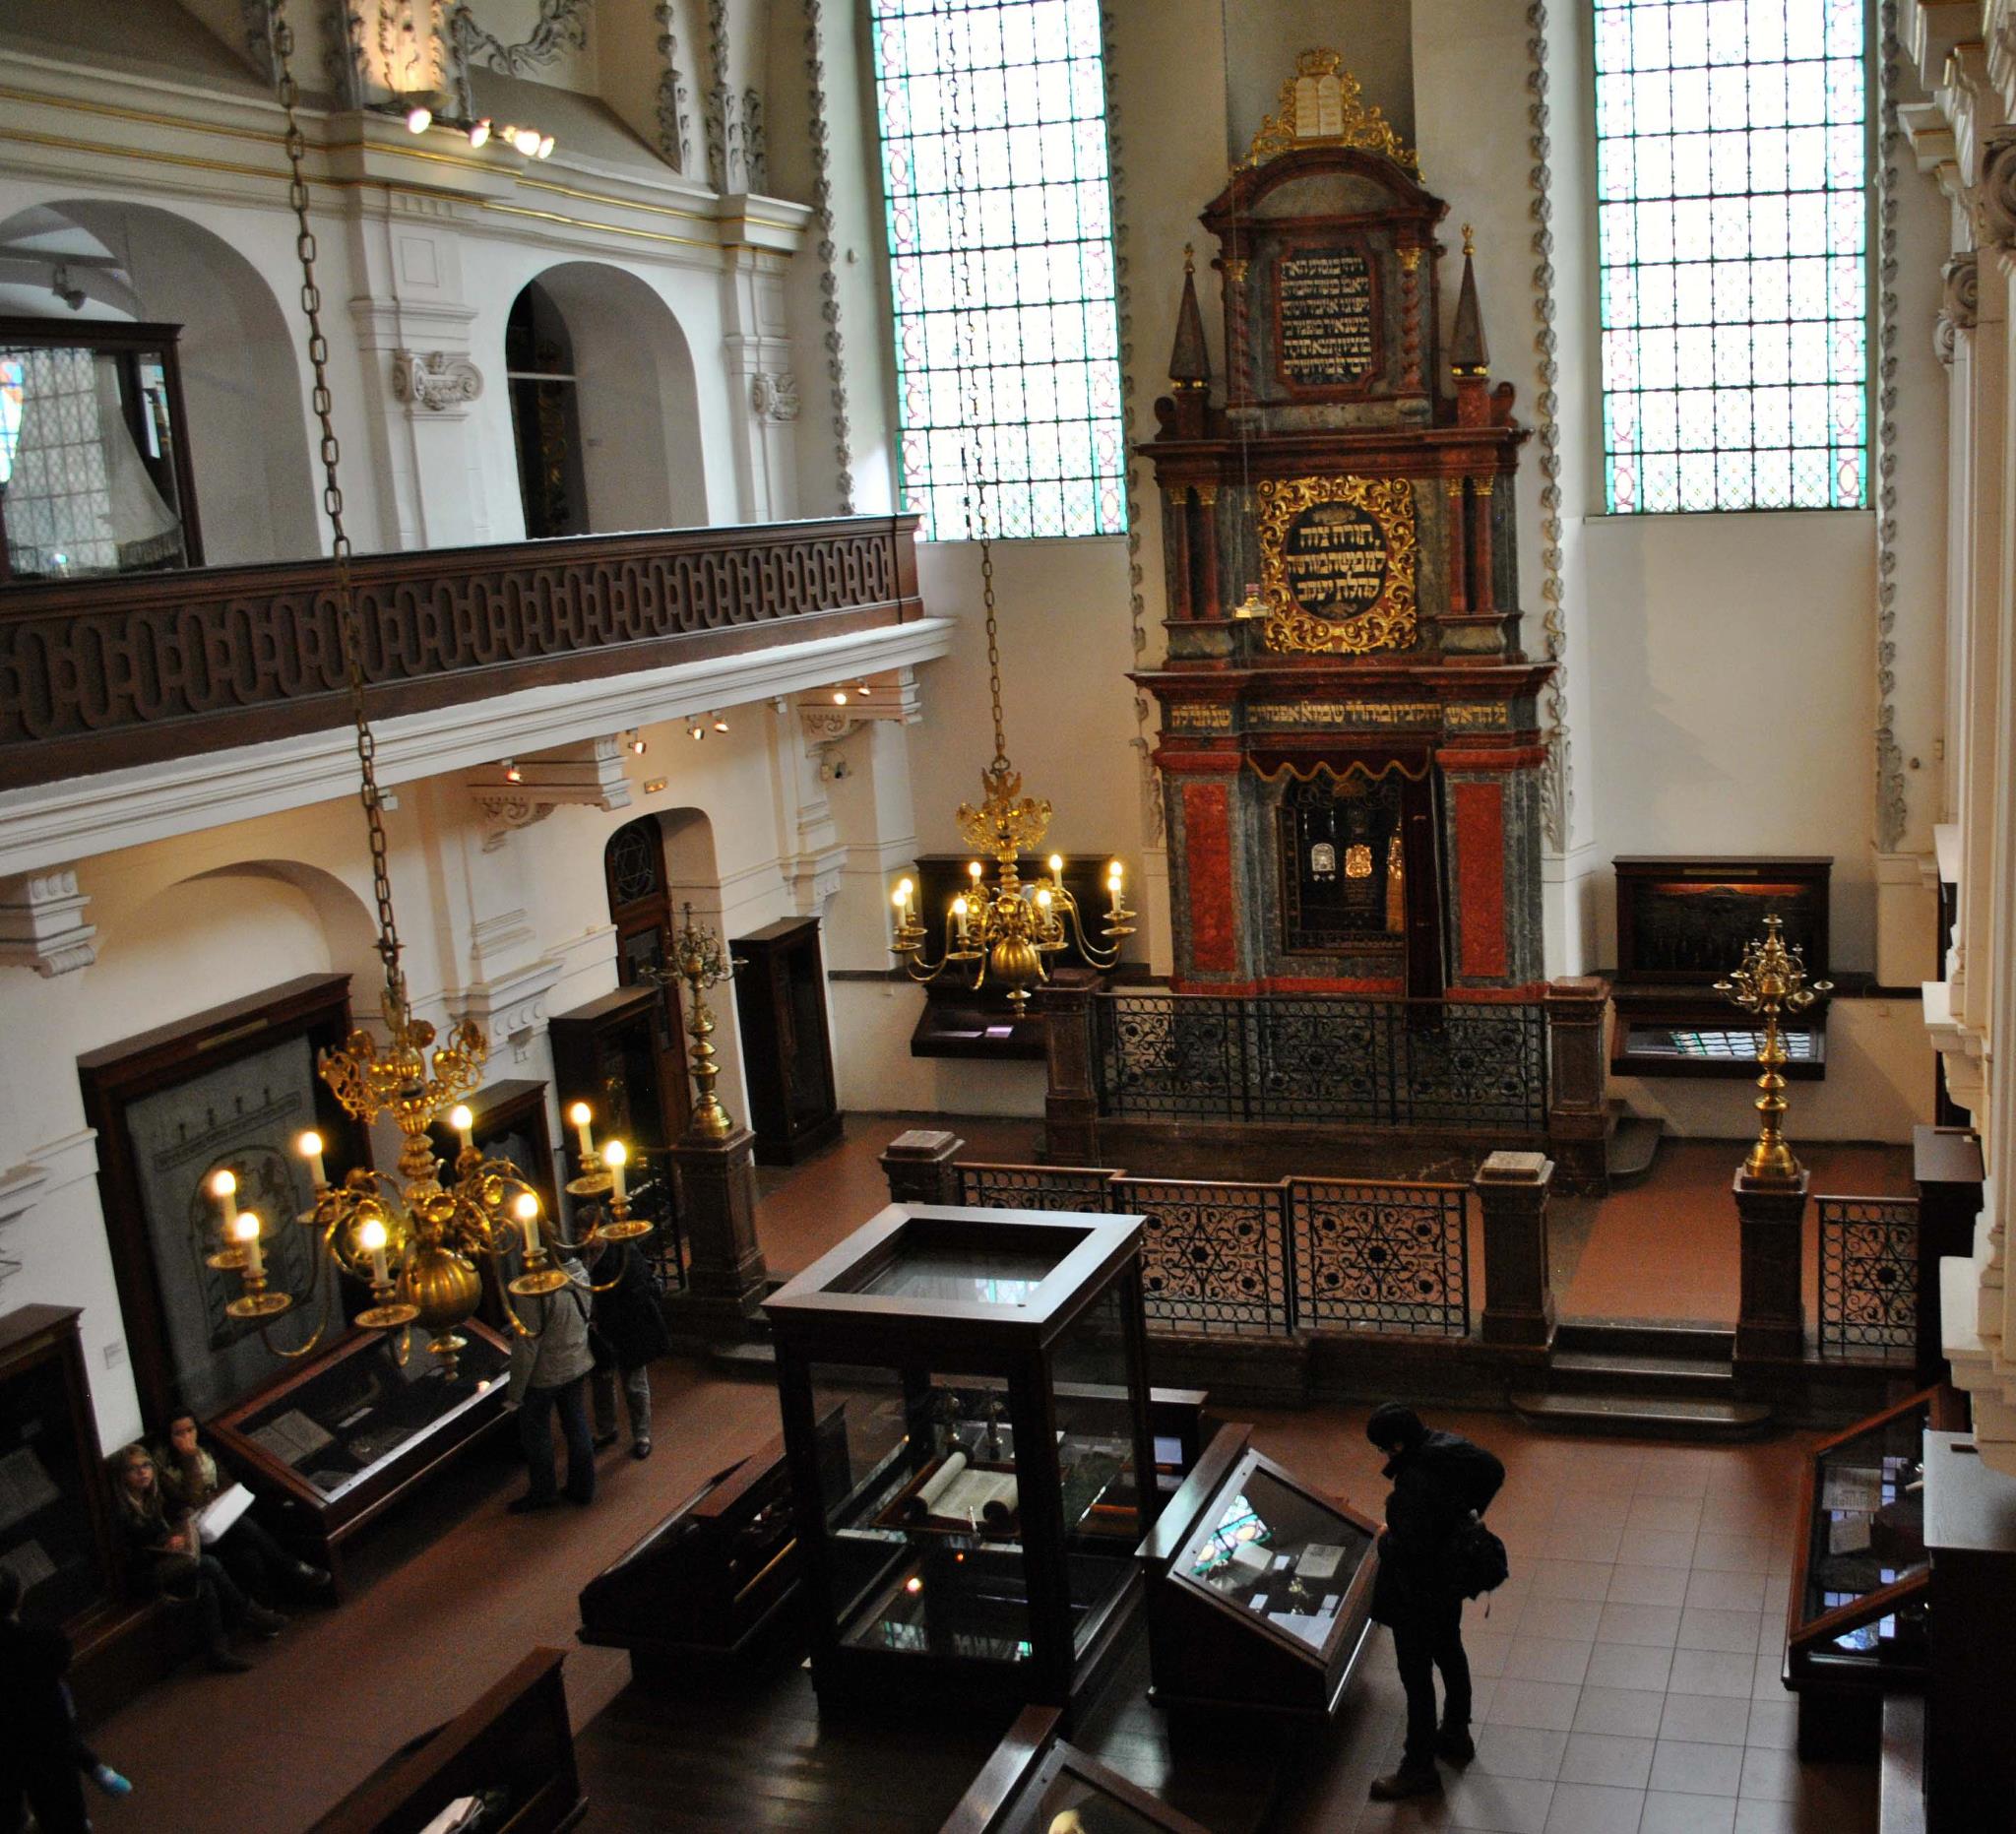 Пражской синагоги. Иерусалимская синагога Прага. Староновая синагога в Праге. Майзелова синагога в Праге. Еврейская синагога в Праге внутри.